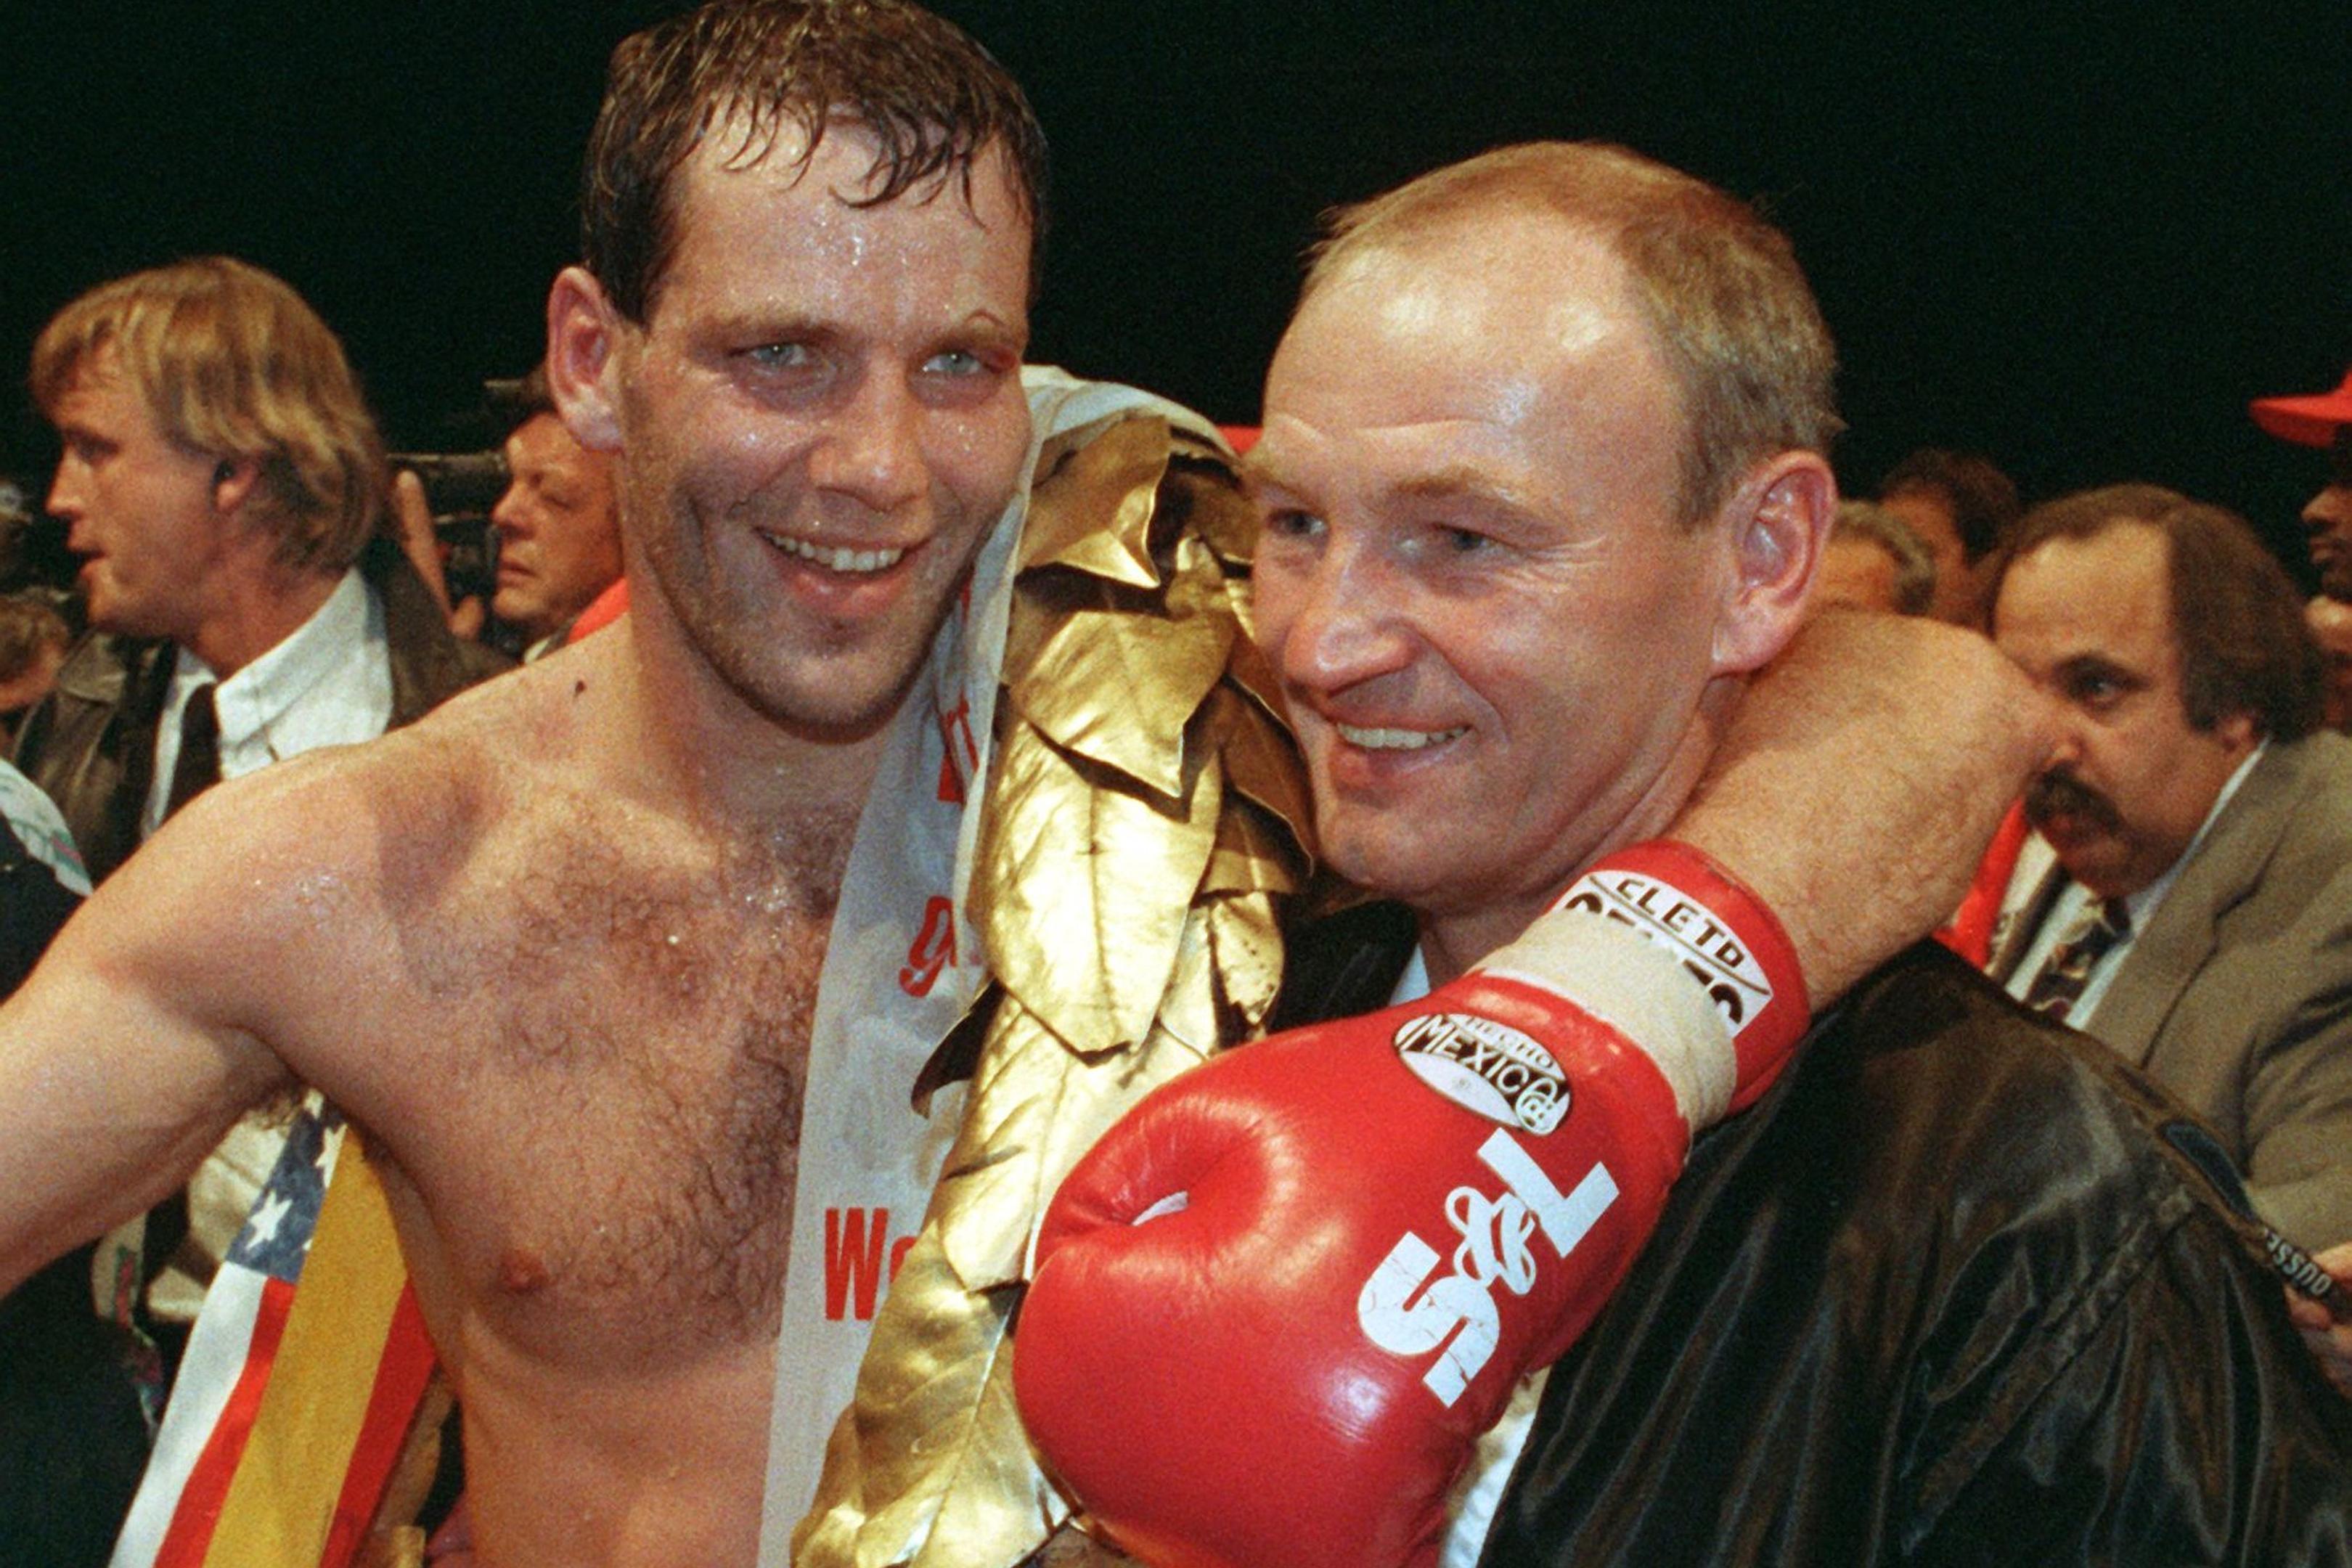 Box-Trainer Manfred Wolke (r) machte Henry Maske zum Champion.